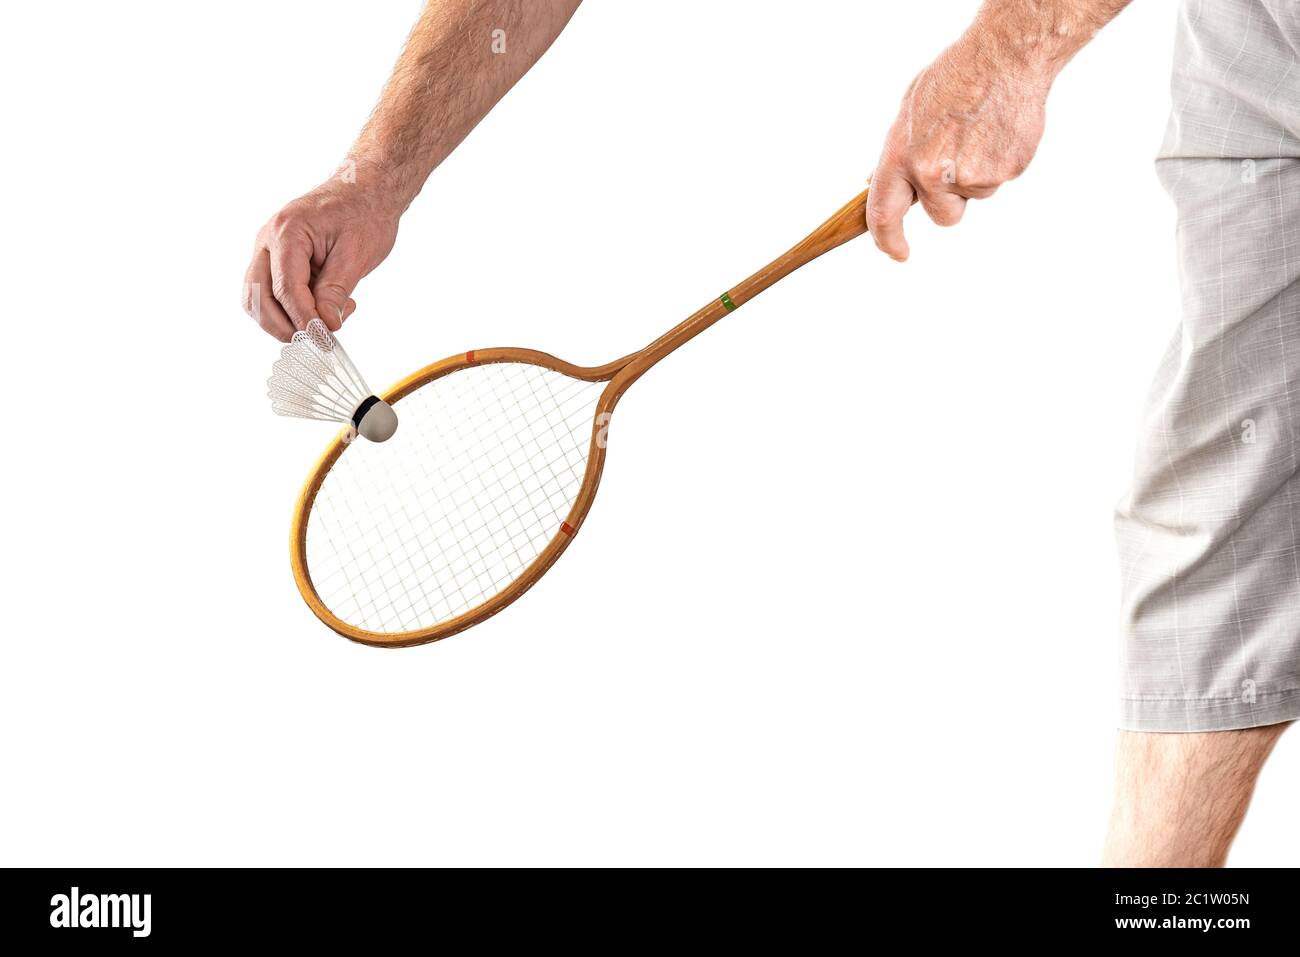 Racchetta di badminton vintage in legno isolata a mano su sfondo bianco Foto Stock